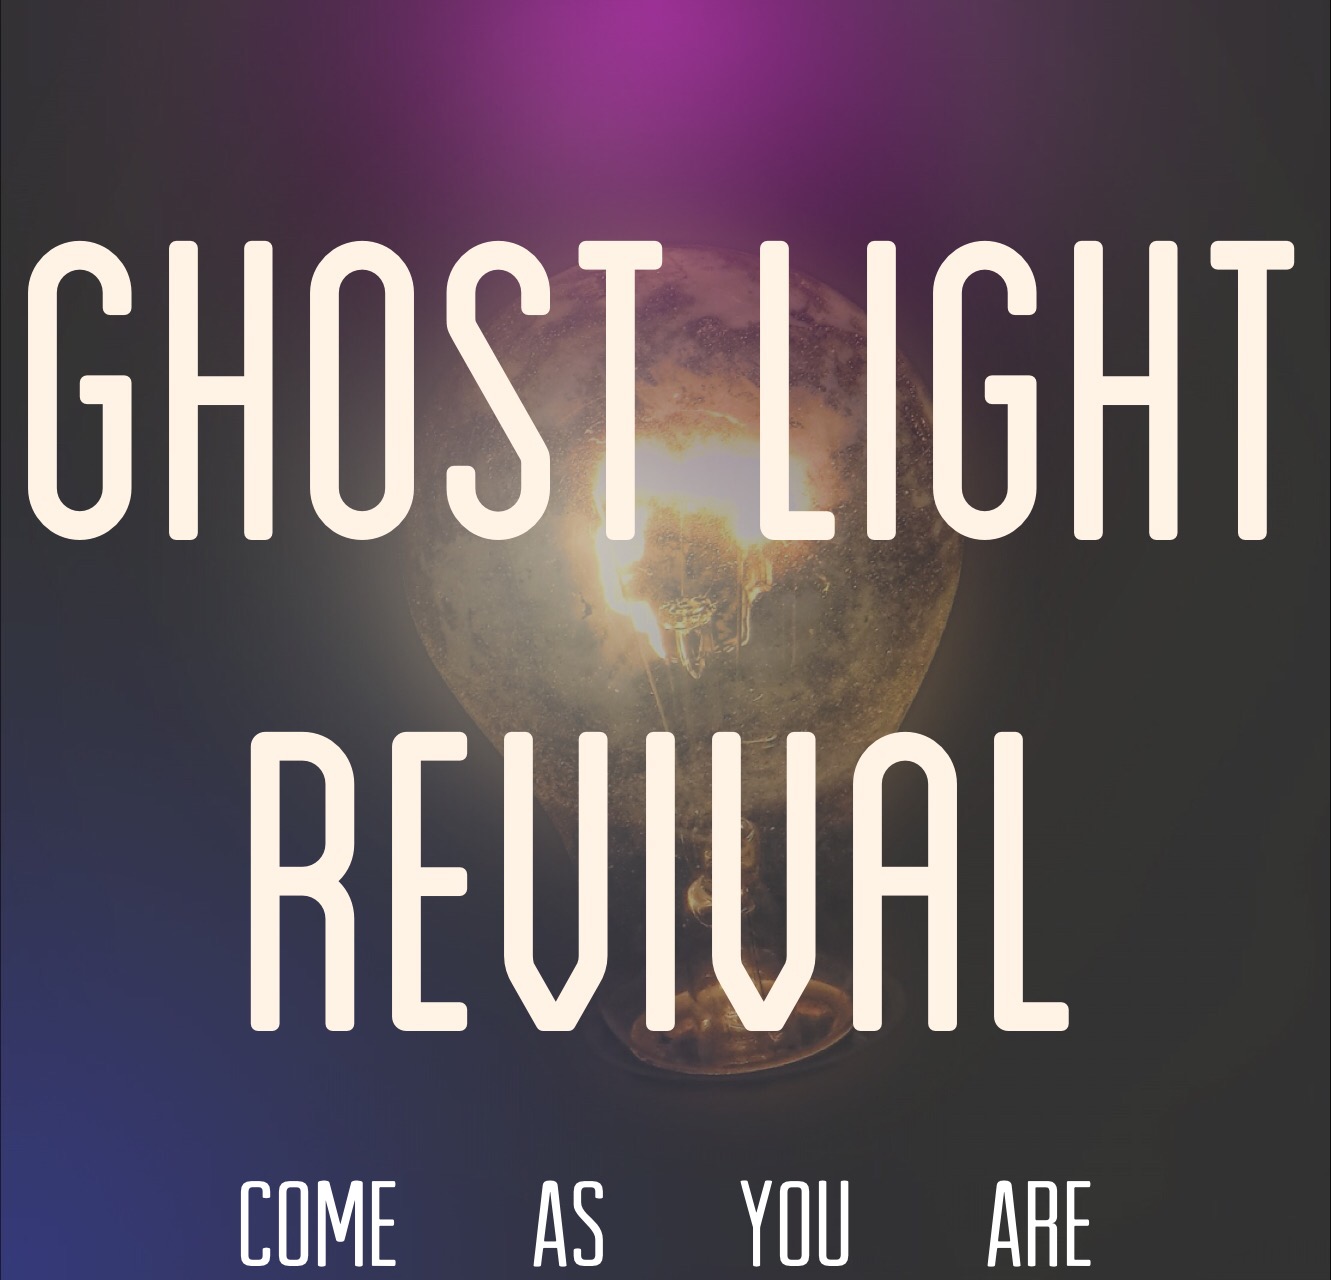  Ghost Light Revival